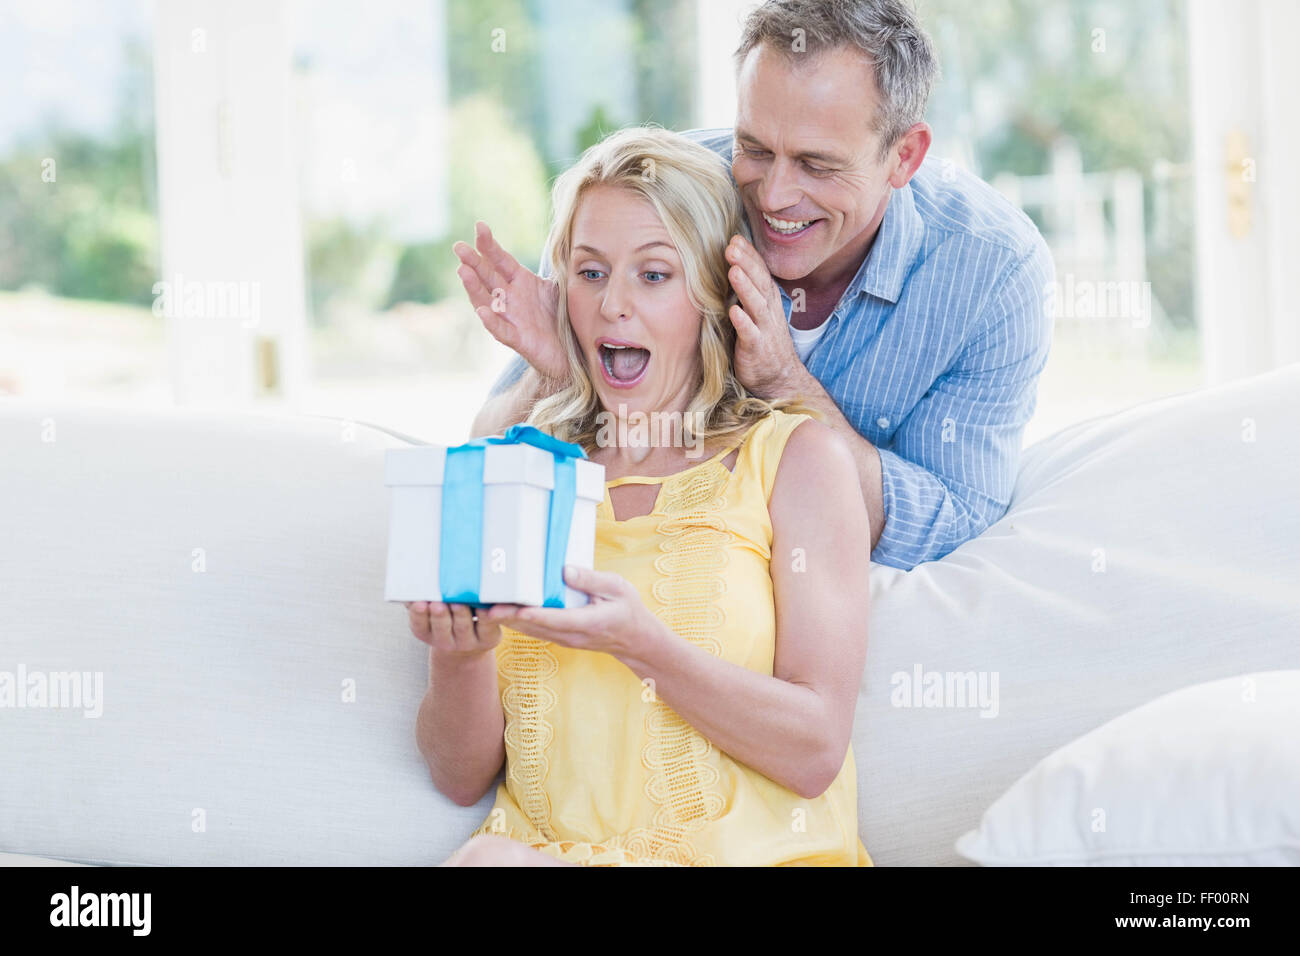 Mann, die Frau mit einem Geschenk zu überraschen Stockfoto